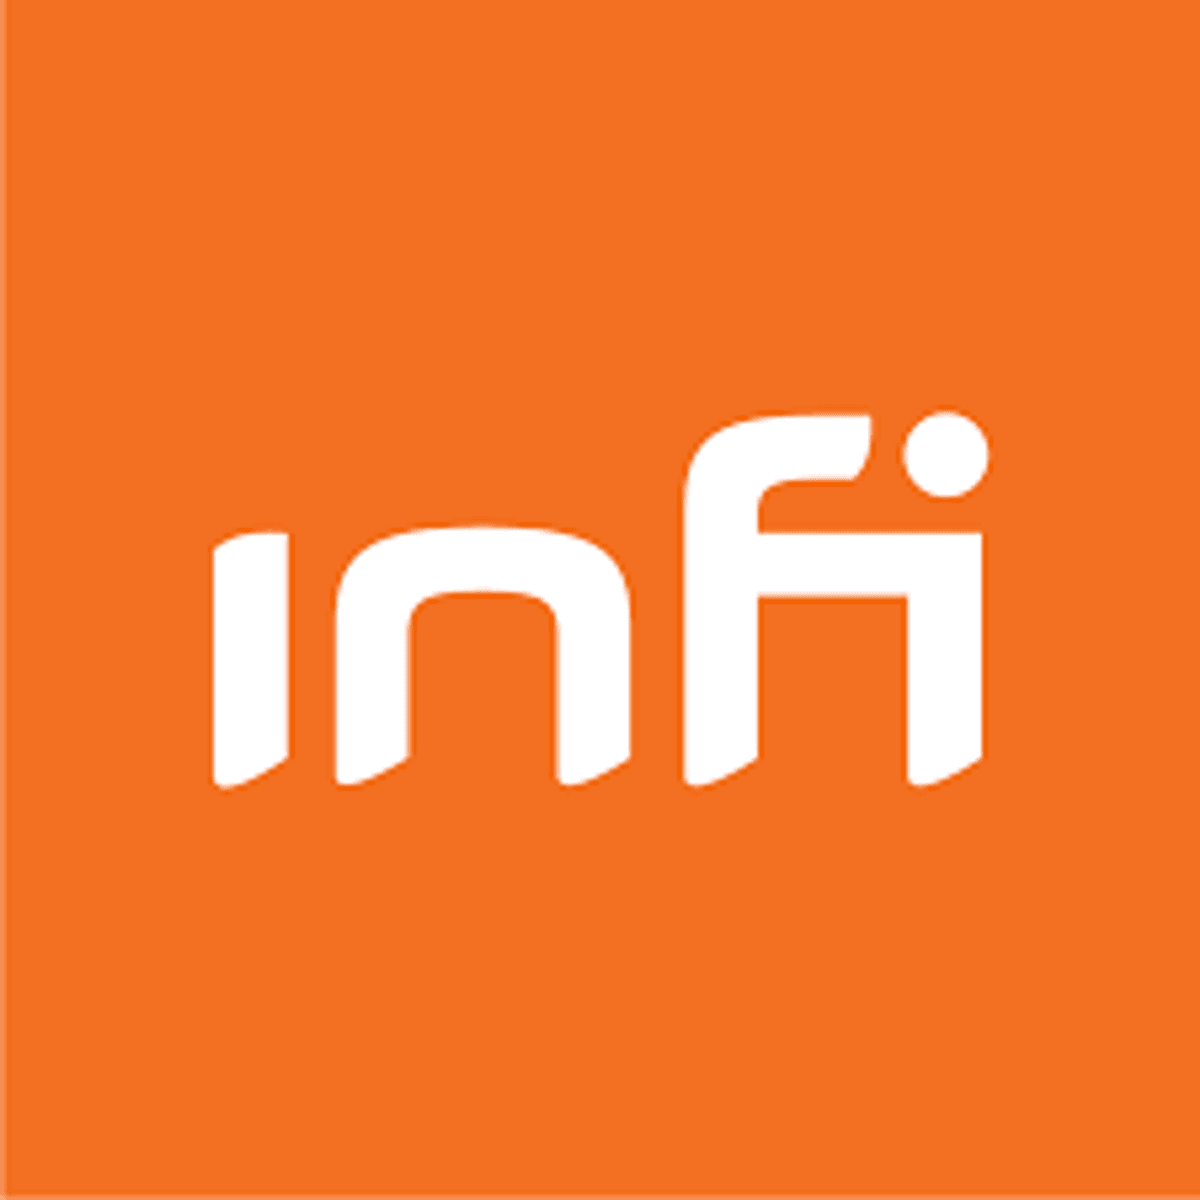 Software-ontwikkelaar Infi start nieuwe scale-up service in Amsterdam image